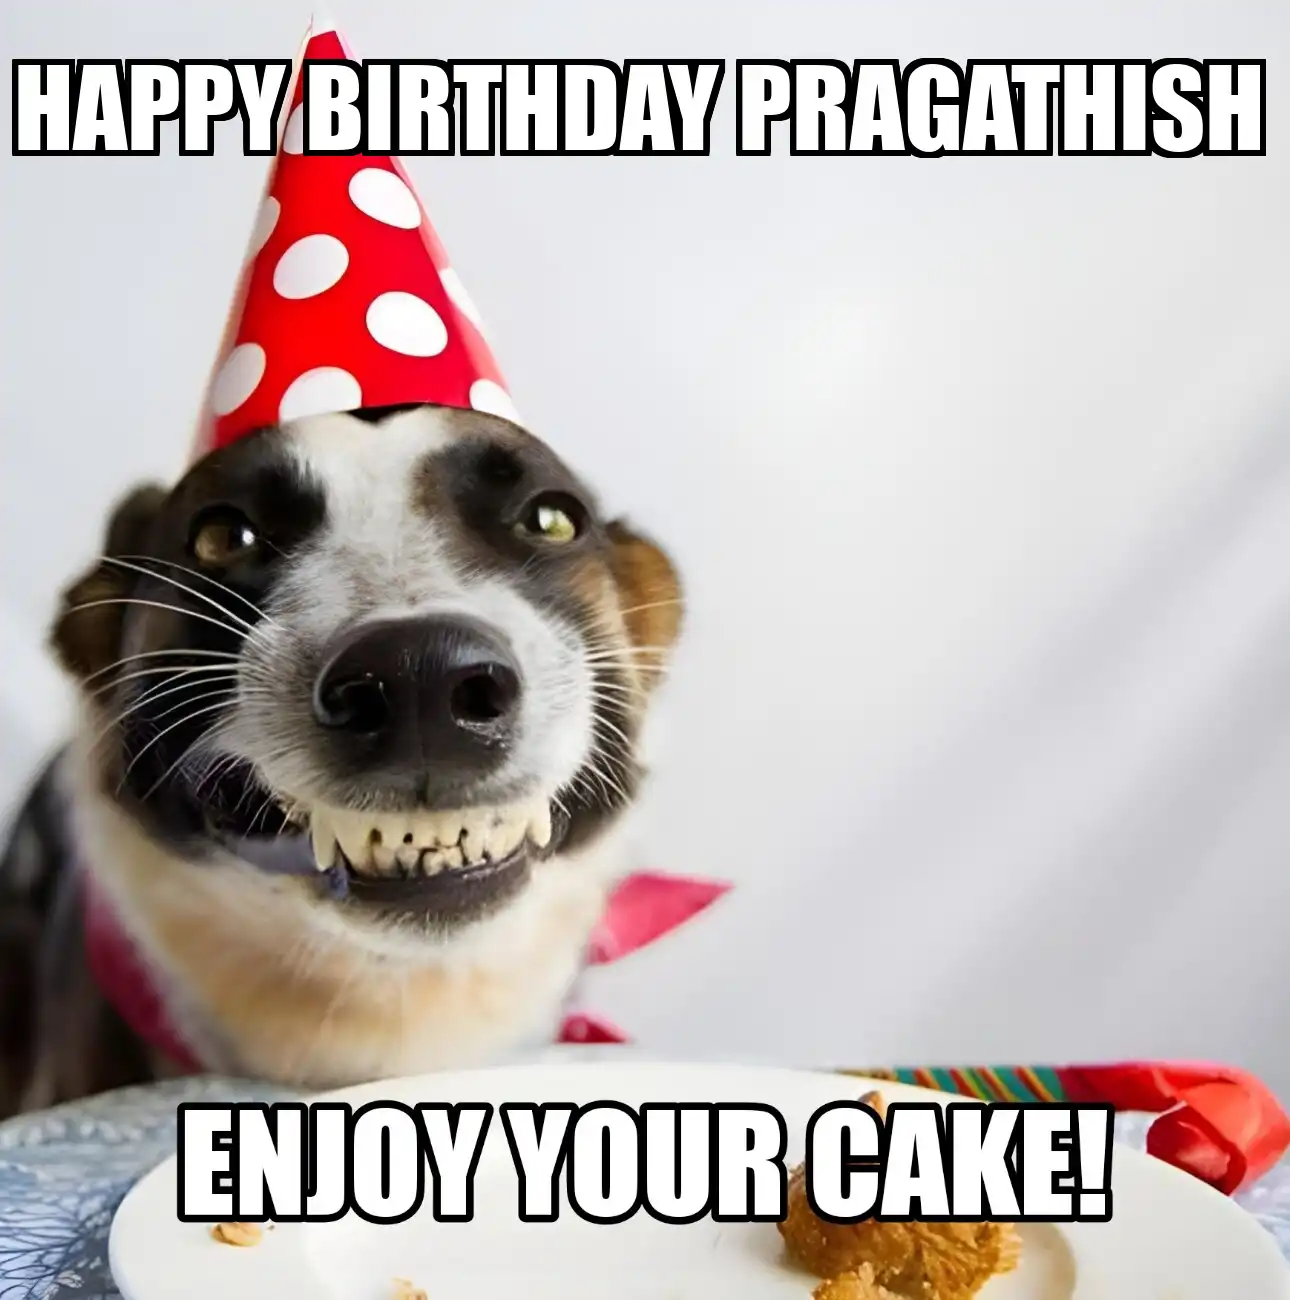 Happy Birthday Pragathish Enjoy Your Cake Dog Meme